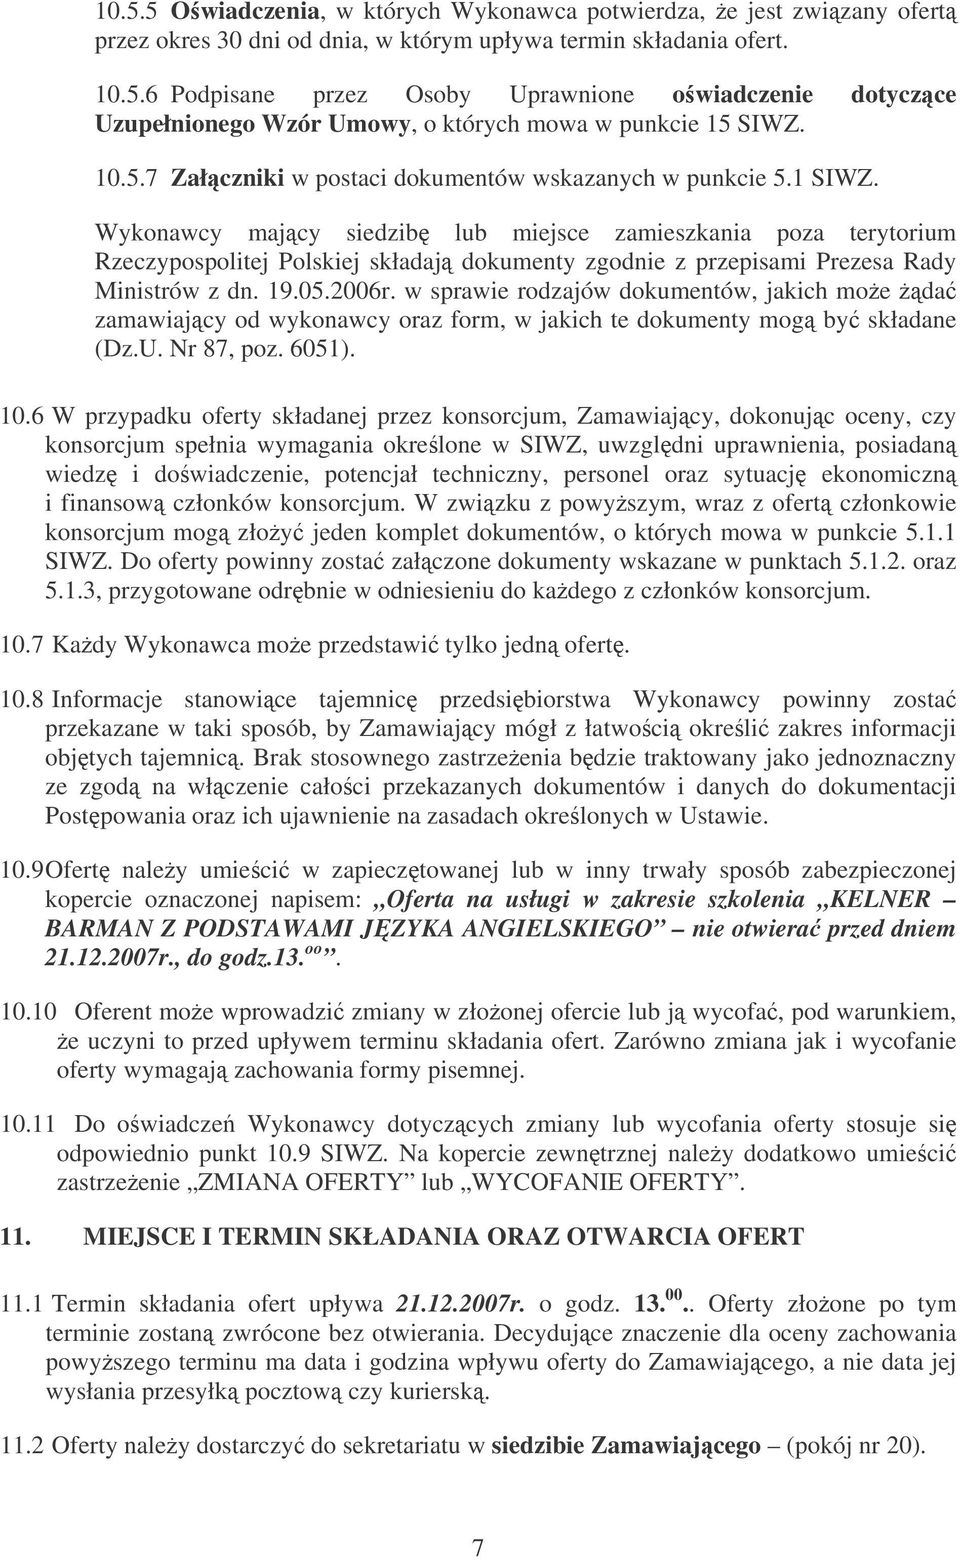 Wykonawcy majcy siedzib lub miejsce zamieszkania poza terytorium Rzeczypospolitej Polskiej składaj dokumenty zgodnie z przepisami Prezesa Rady Ministrów z dn. 19.05.2006r.